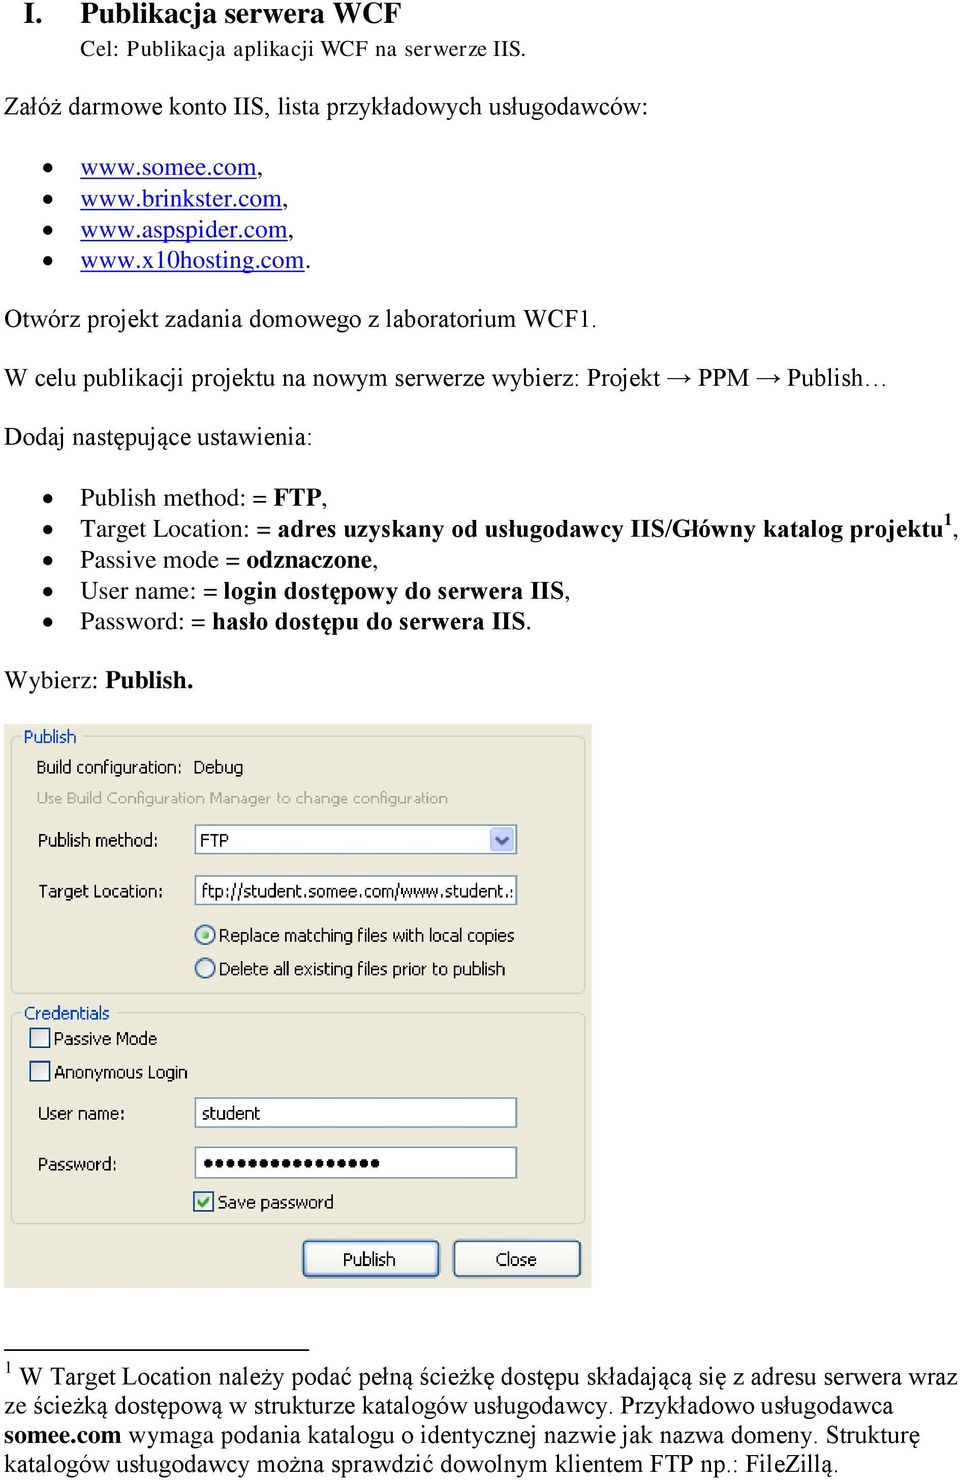 W celu publikacji projektu na nowym serwerze wybierz: Projekt PPM Publish Dodaj następujące ustawienia: Publish method: = FTP, Target Location: = adres uzyskany od usługodawcy IIS/Główny katalog